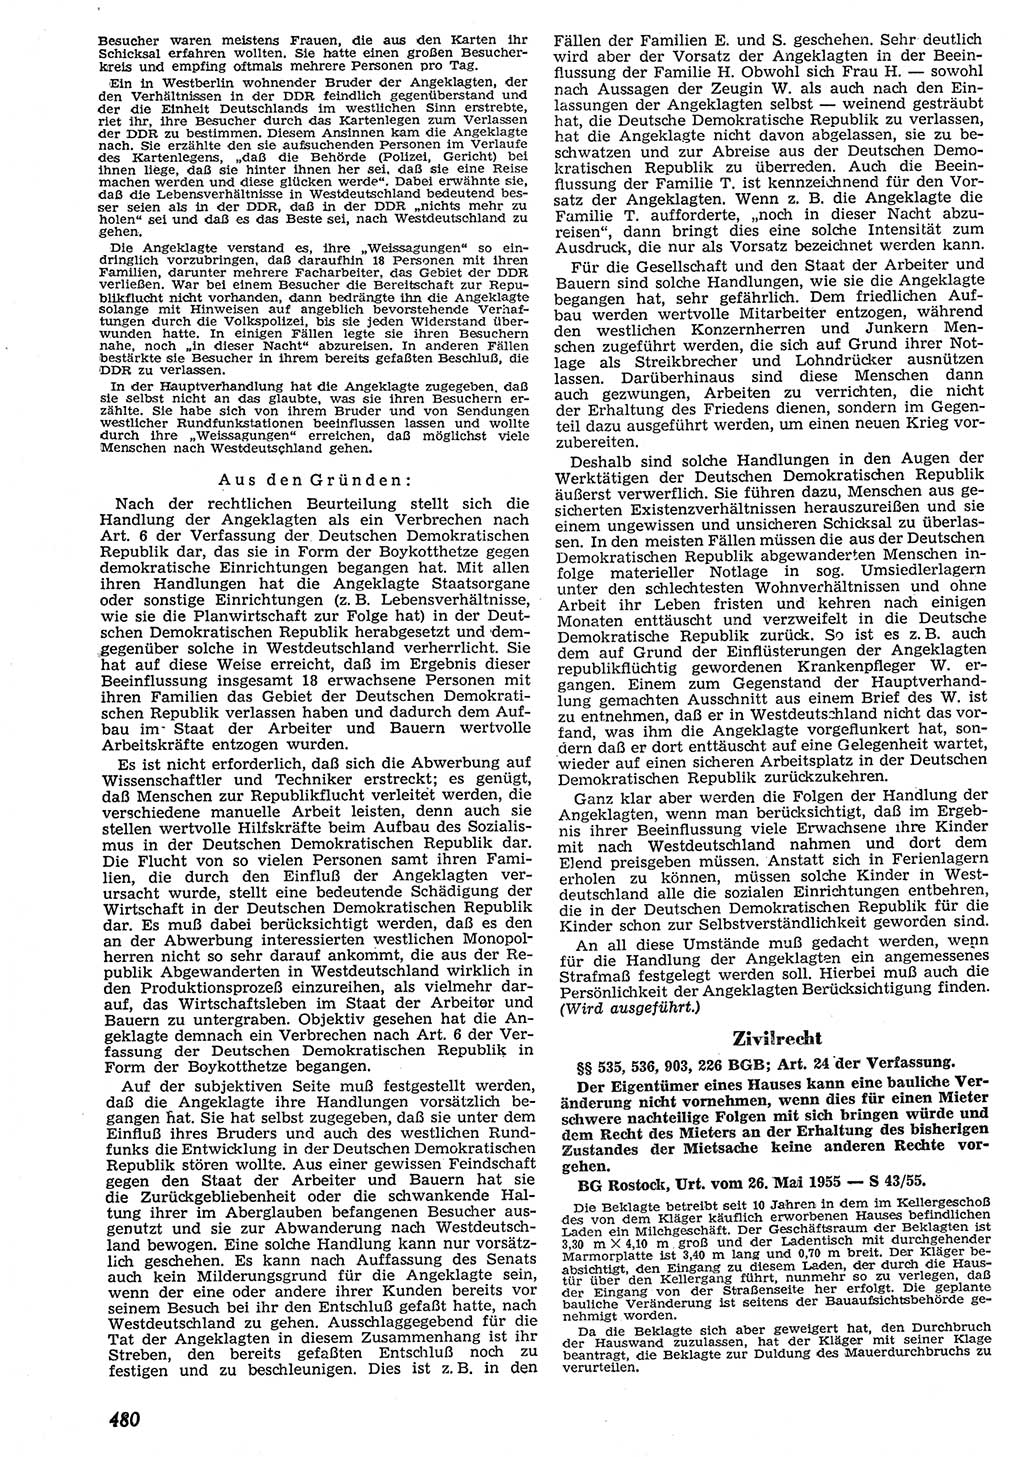 Neue Justiz (NJ), Zeitschrift für Recht und Rechtswissenschaft [Deutsche Demokratische Republik (DDR)], 10. Jahrgang 1956, Seite 480 (NJ DDR 1956, S. 480)